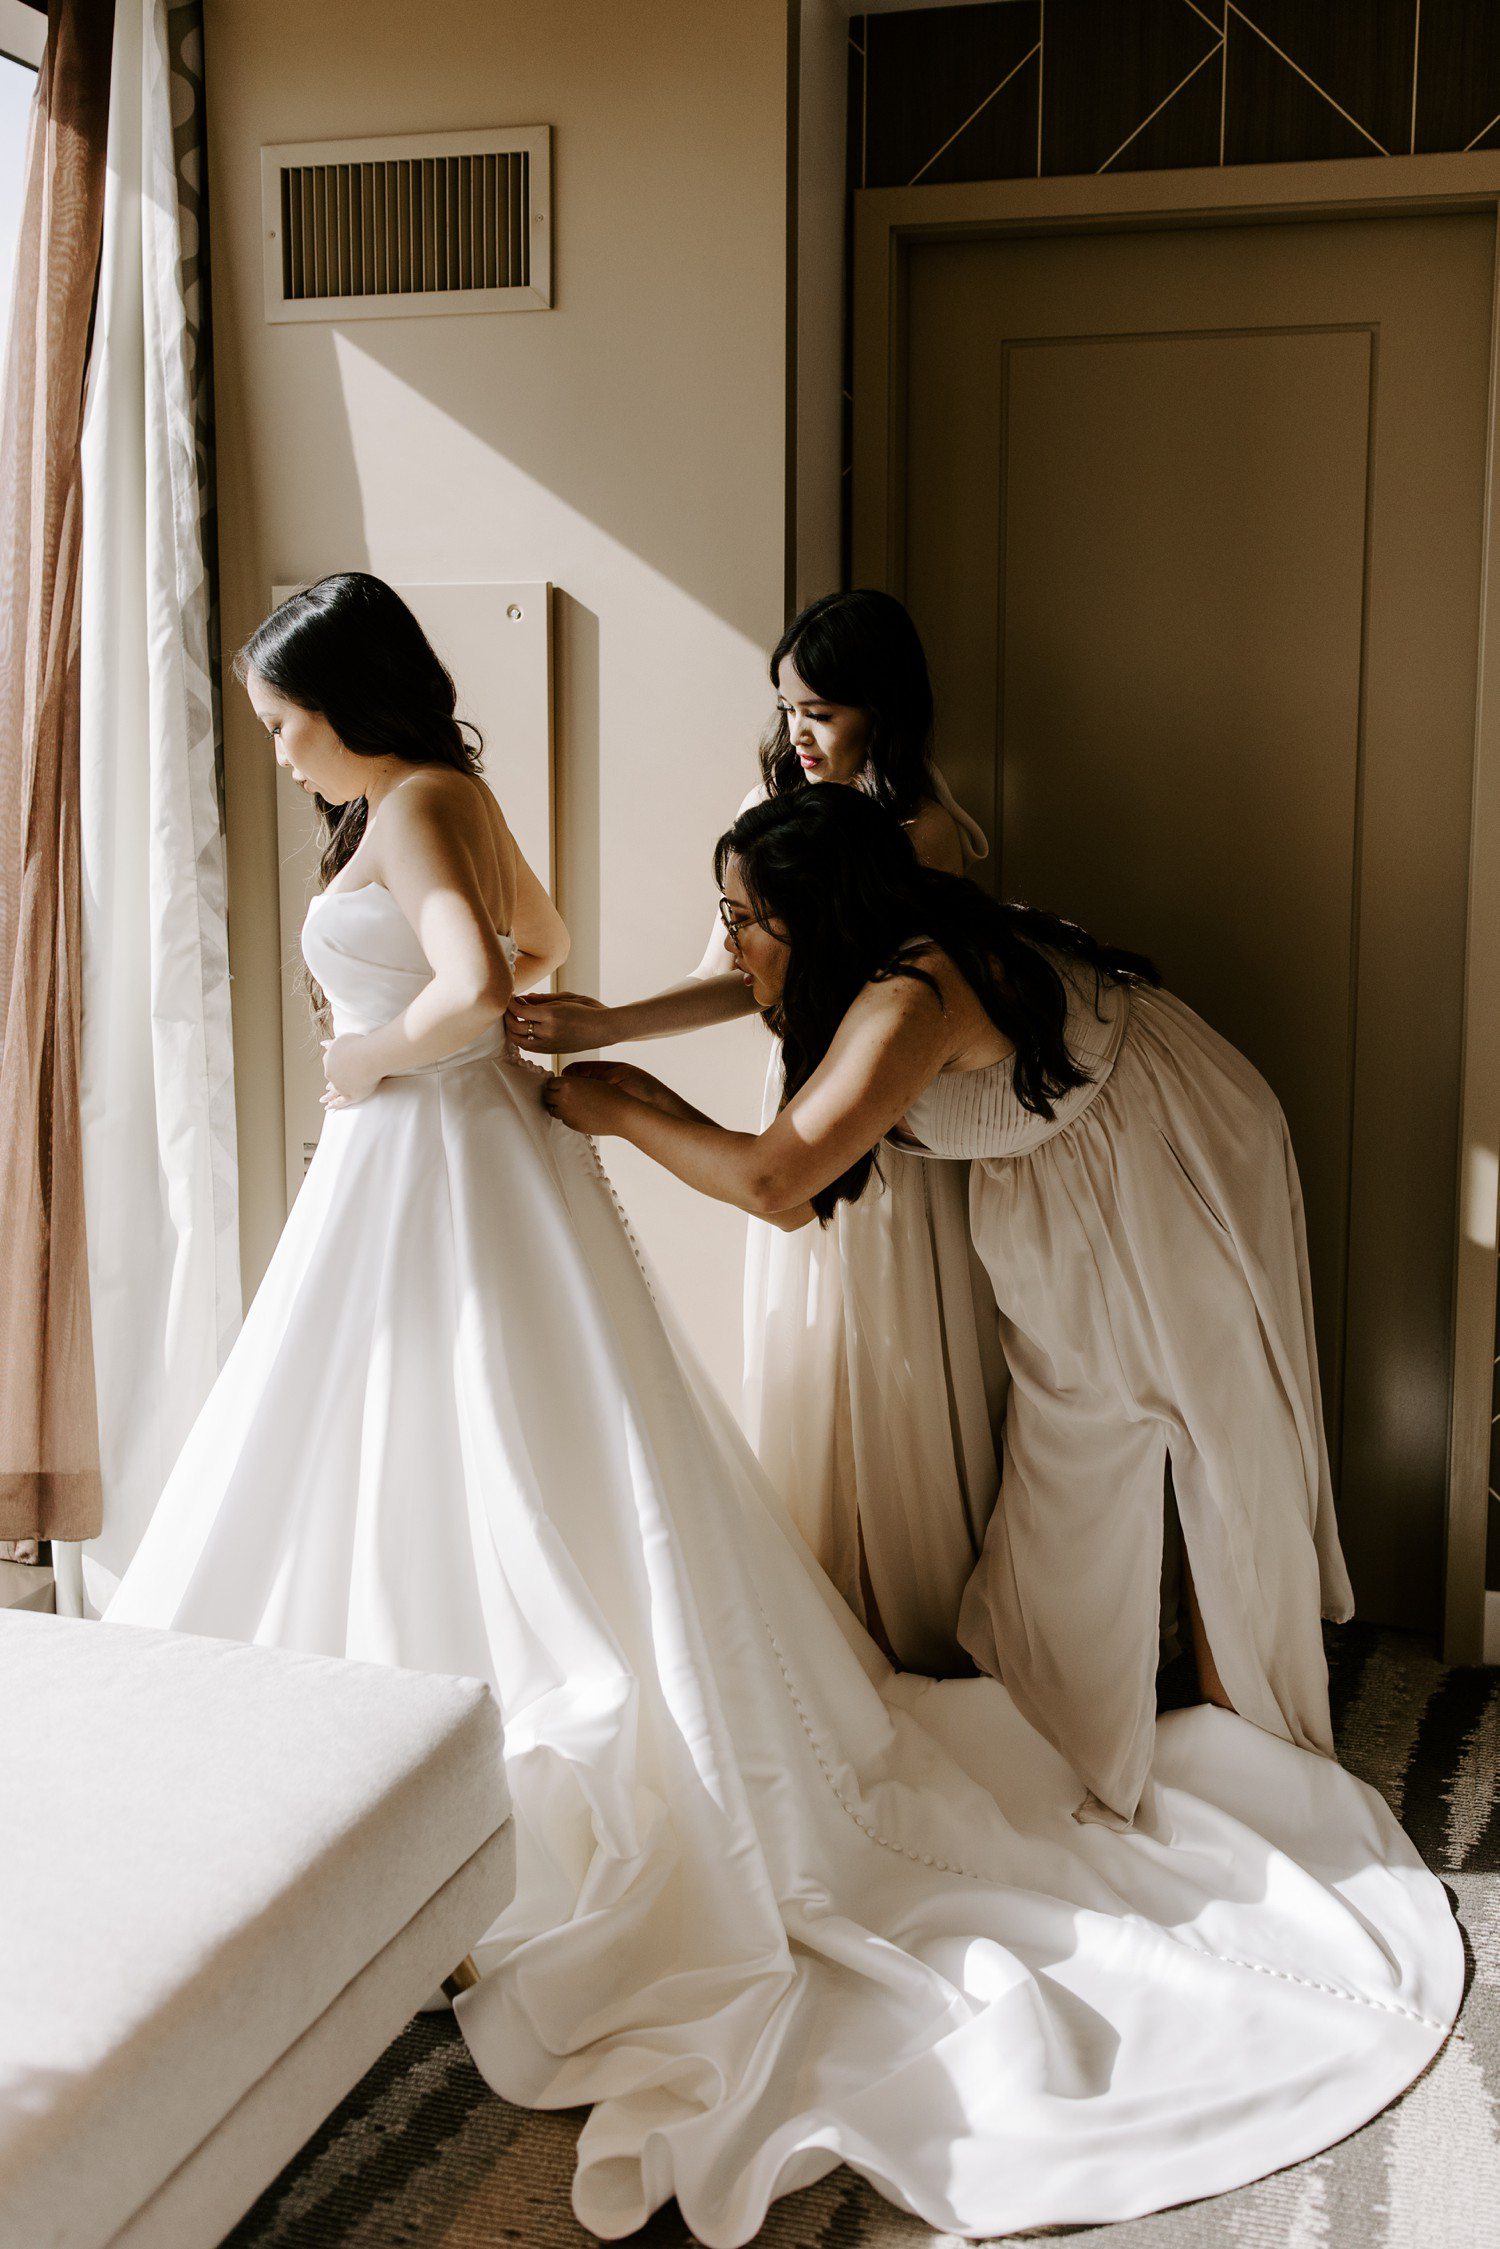 Bridesmaids helping zip bride into dress.